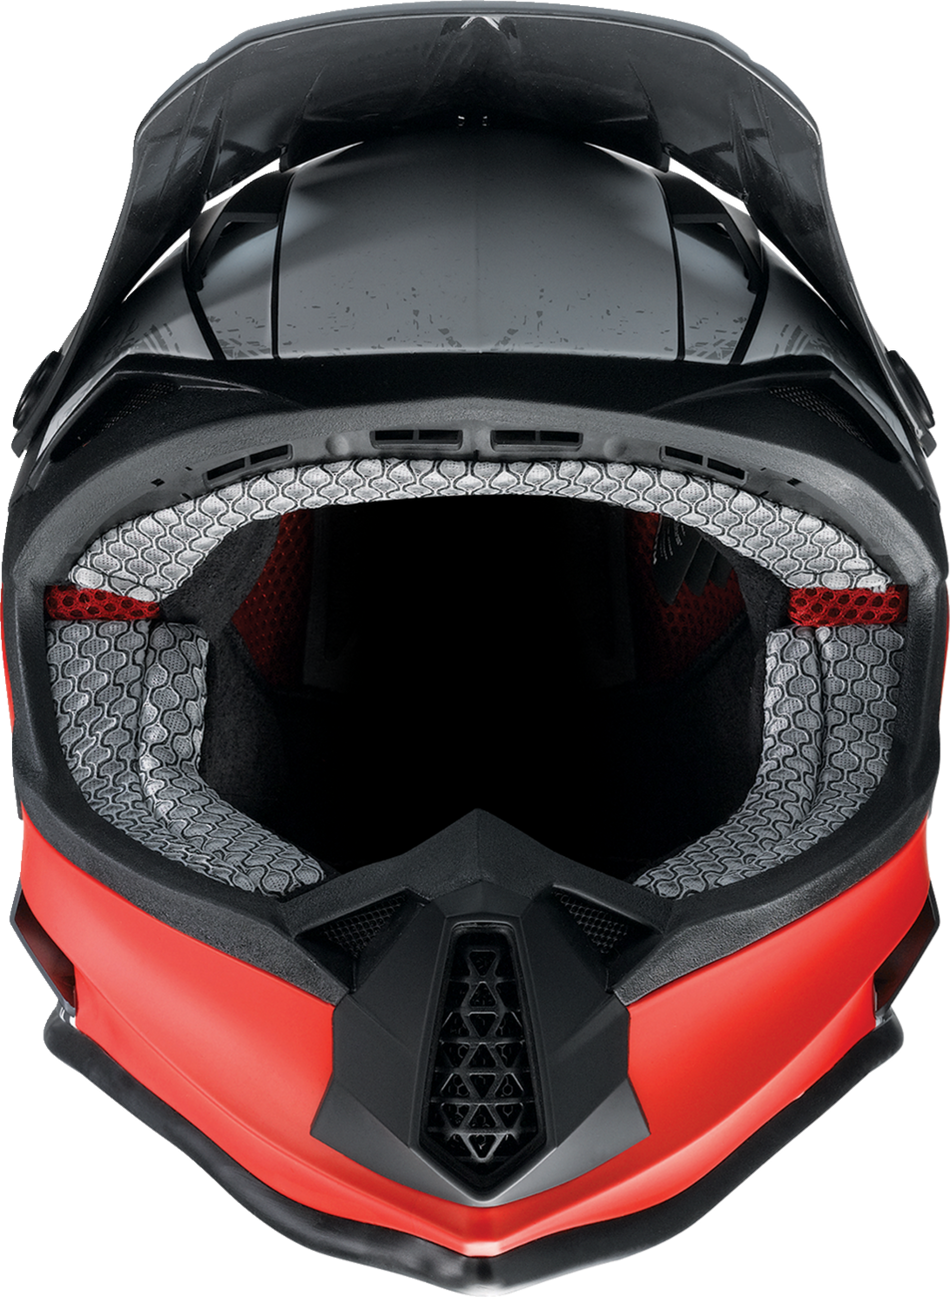 Z1R Youth F.I. Helmet - Fractal - MIPS - Matte Black/Red - Large 0111-1519